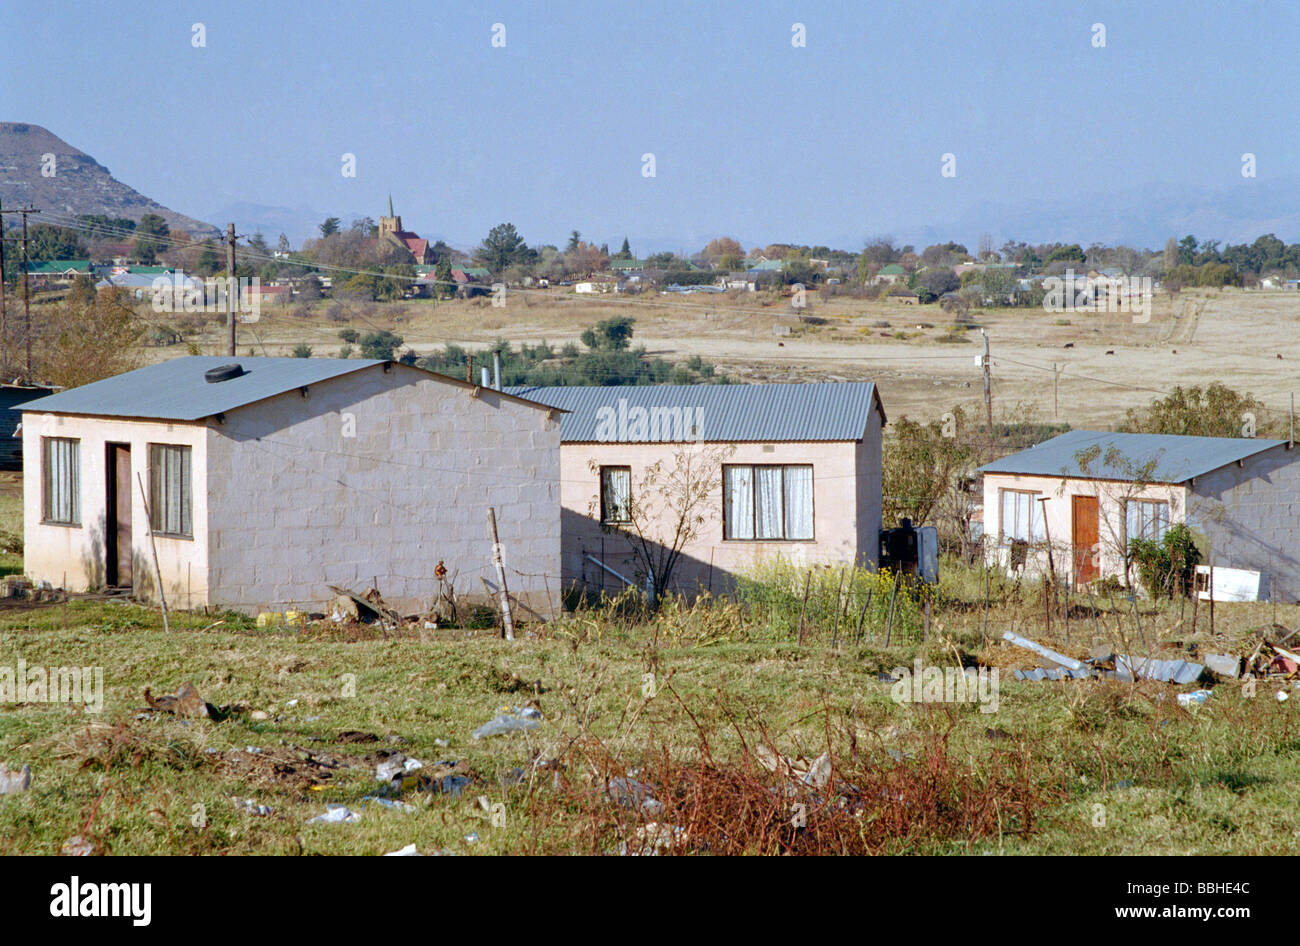 Come la maggior parte dei piccoli Sud città africane Fouriesburg era una volta uno studio nella disuguaglianza attraverso la valle in Mashaeng un adolescente passeggiate Foto Stock